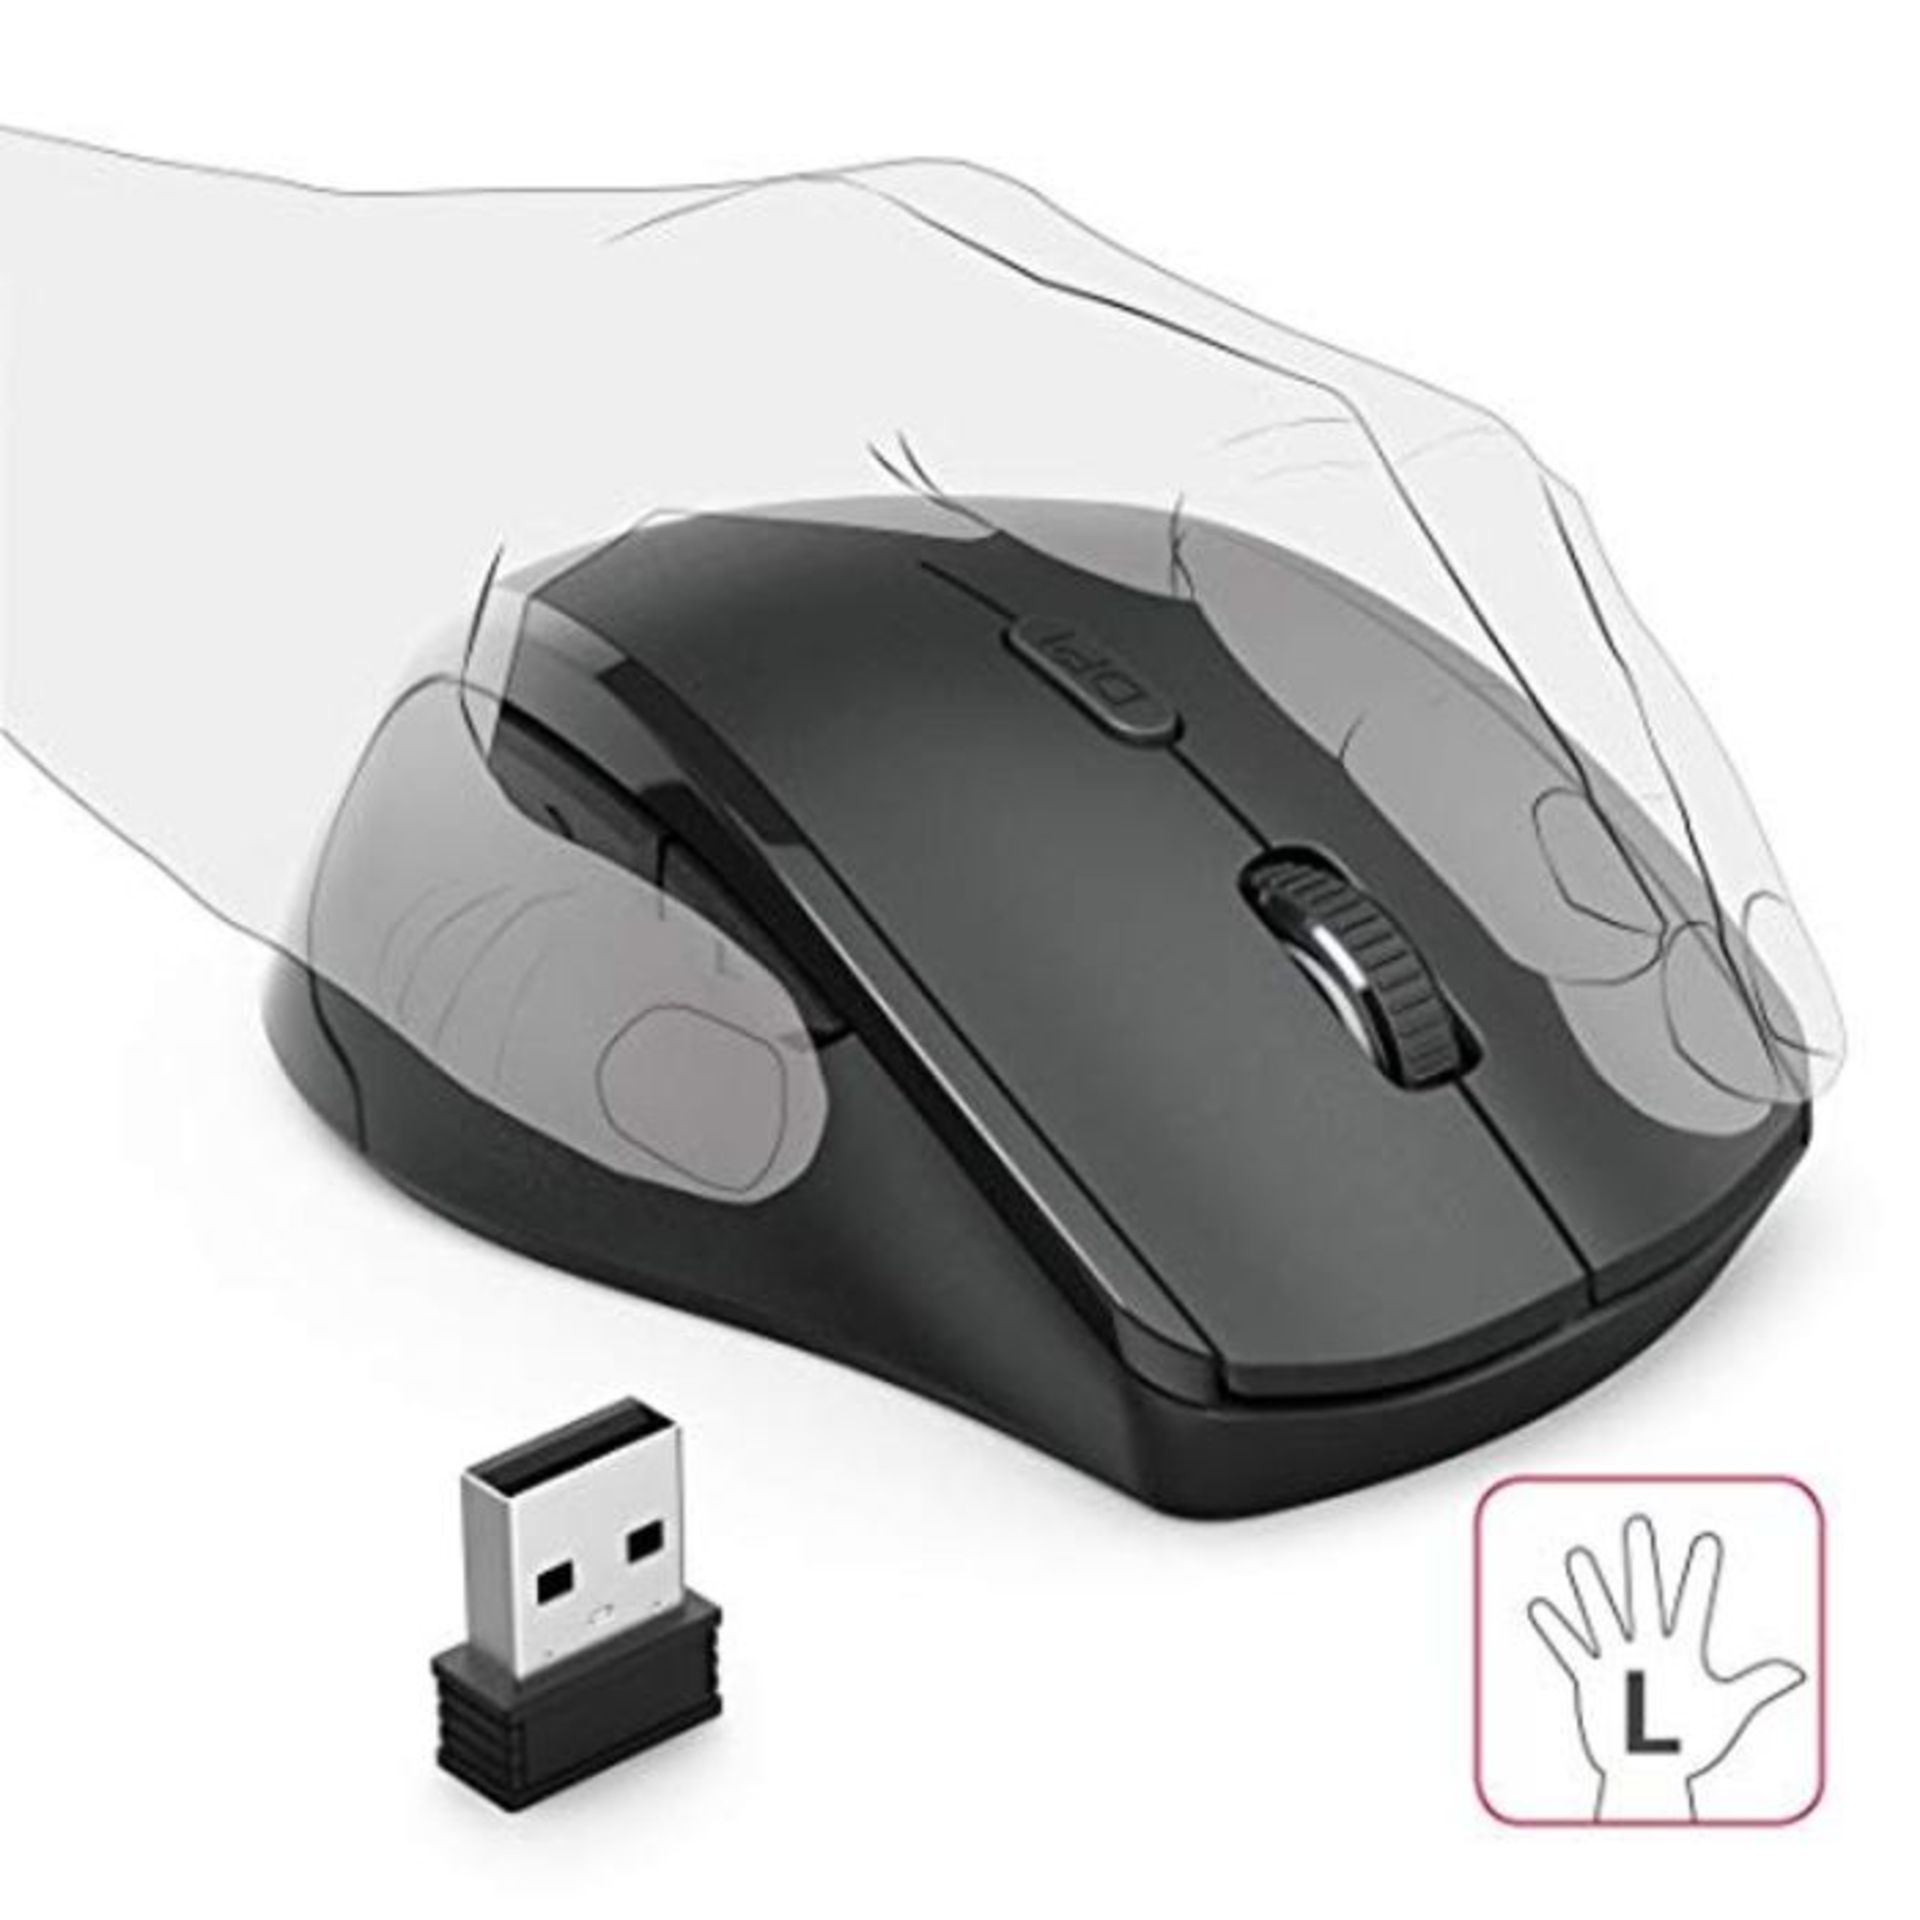 Hama Maus kabellos für Linkshänder ergonomisch (Linkshänder-Maus ohne Kabel, Wirele